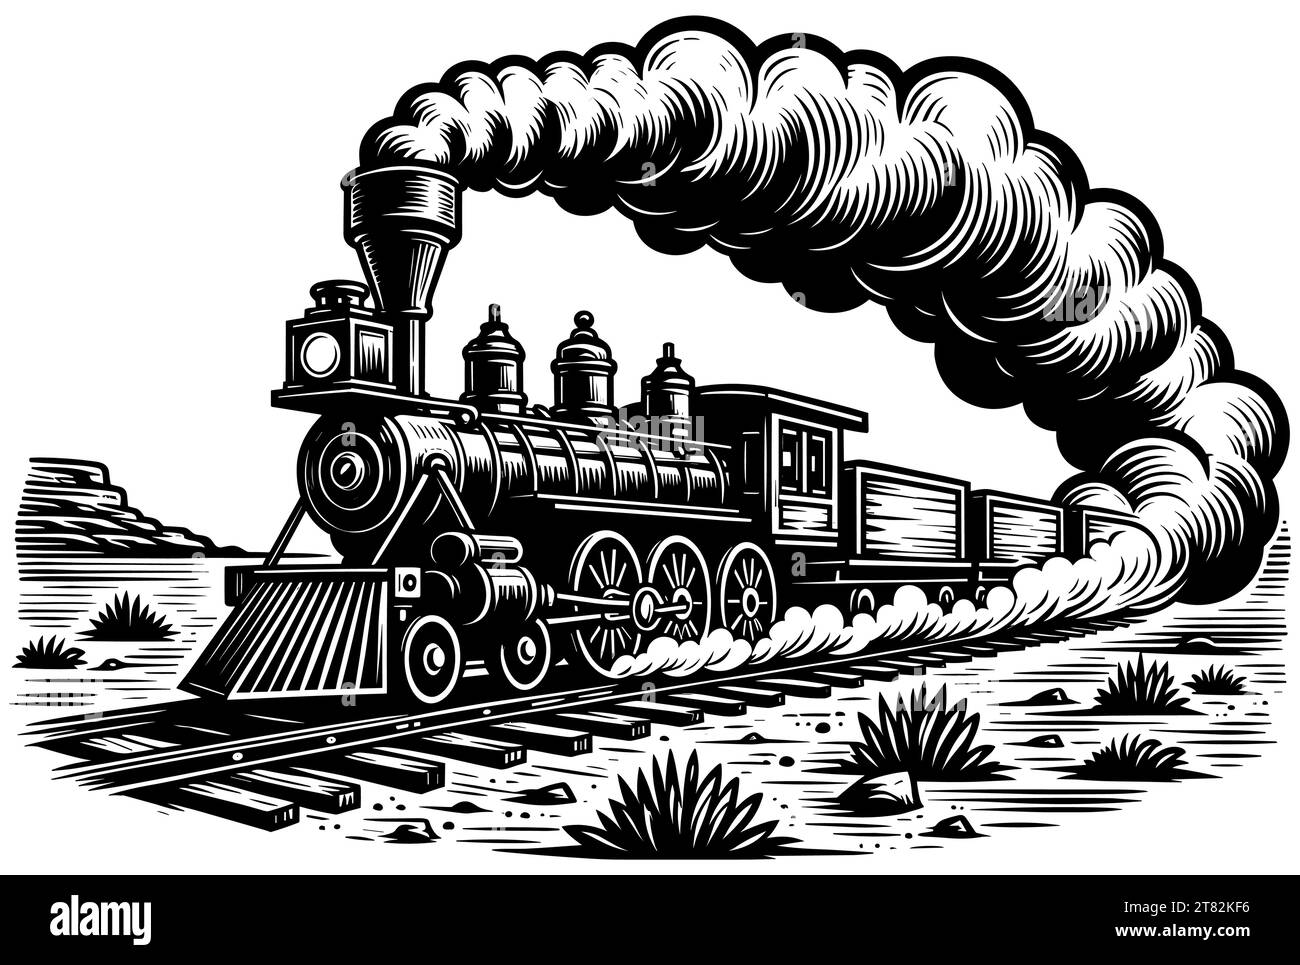 Linolschnitt-Illustration einer Dampfeisenbahn, die mit rauchendem Rauch über Gleise fährt. Stock Vektor